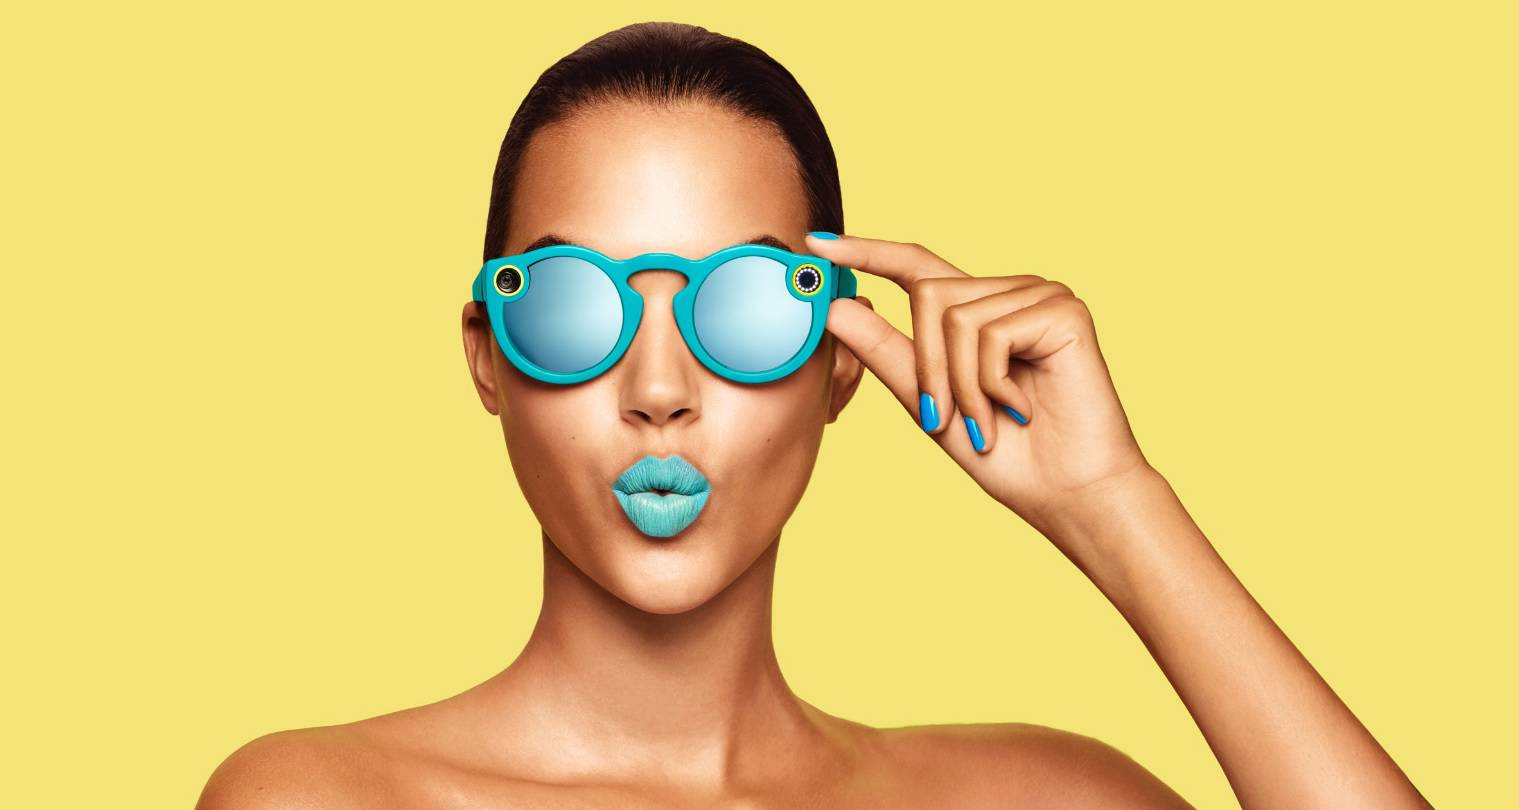 Snapchat sada ima sunčane naočale koje će snimati video